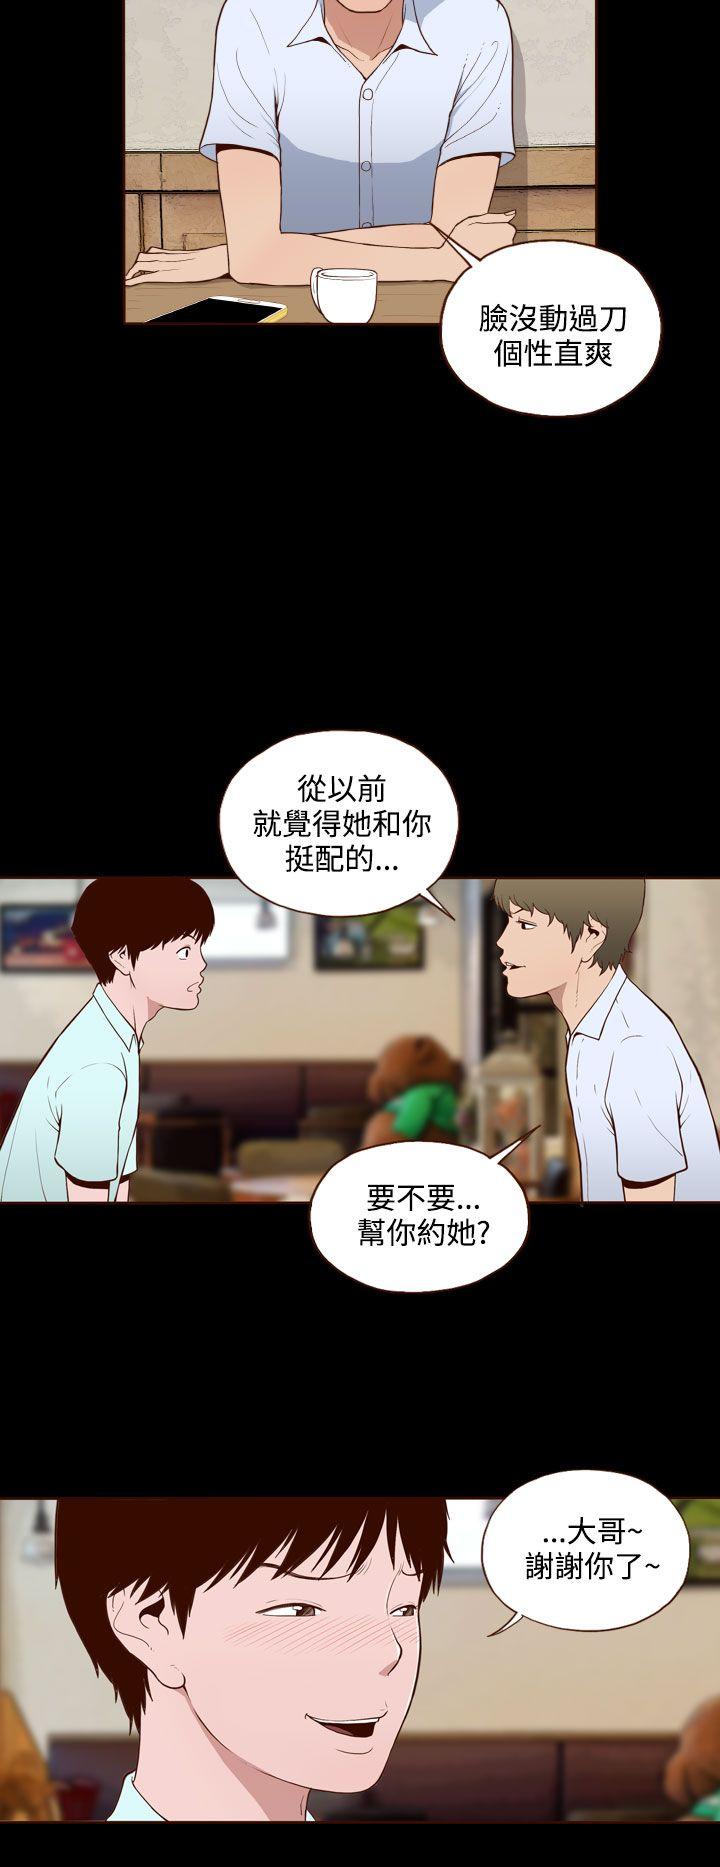 韩国污漫画 無法隱藏 第10话 22